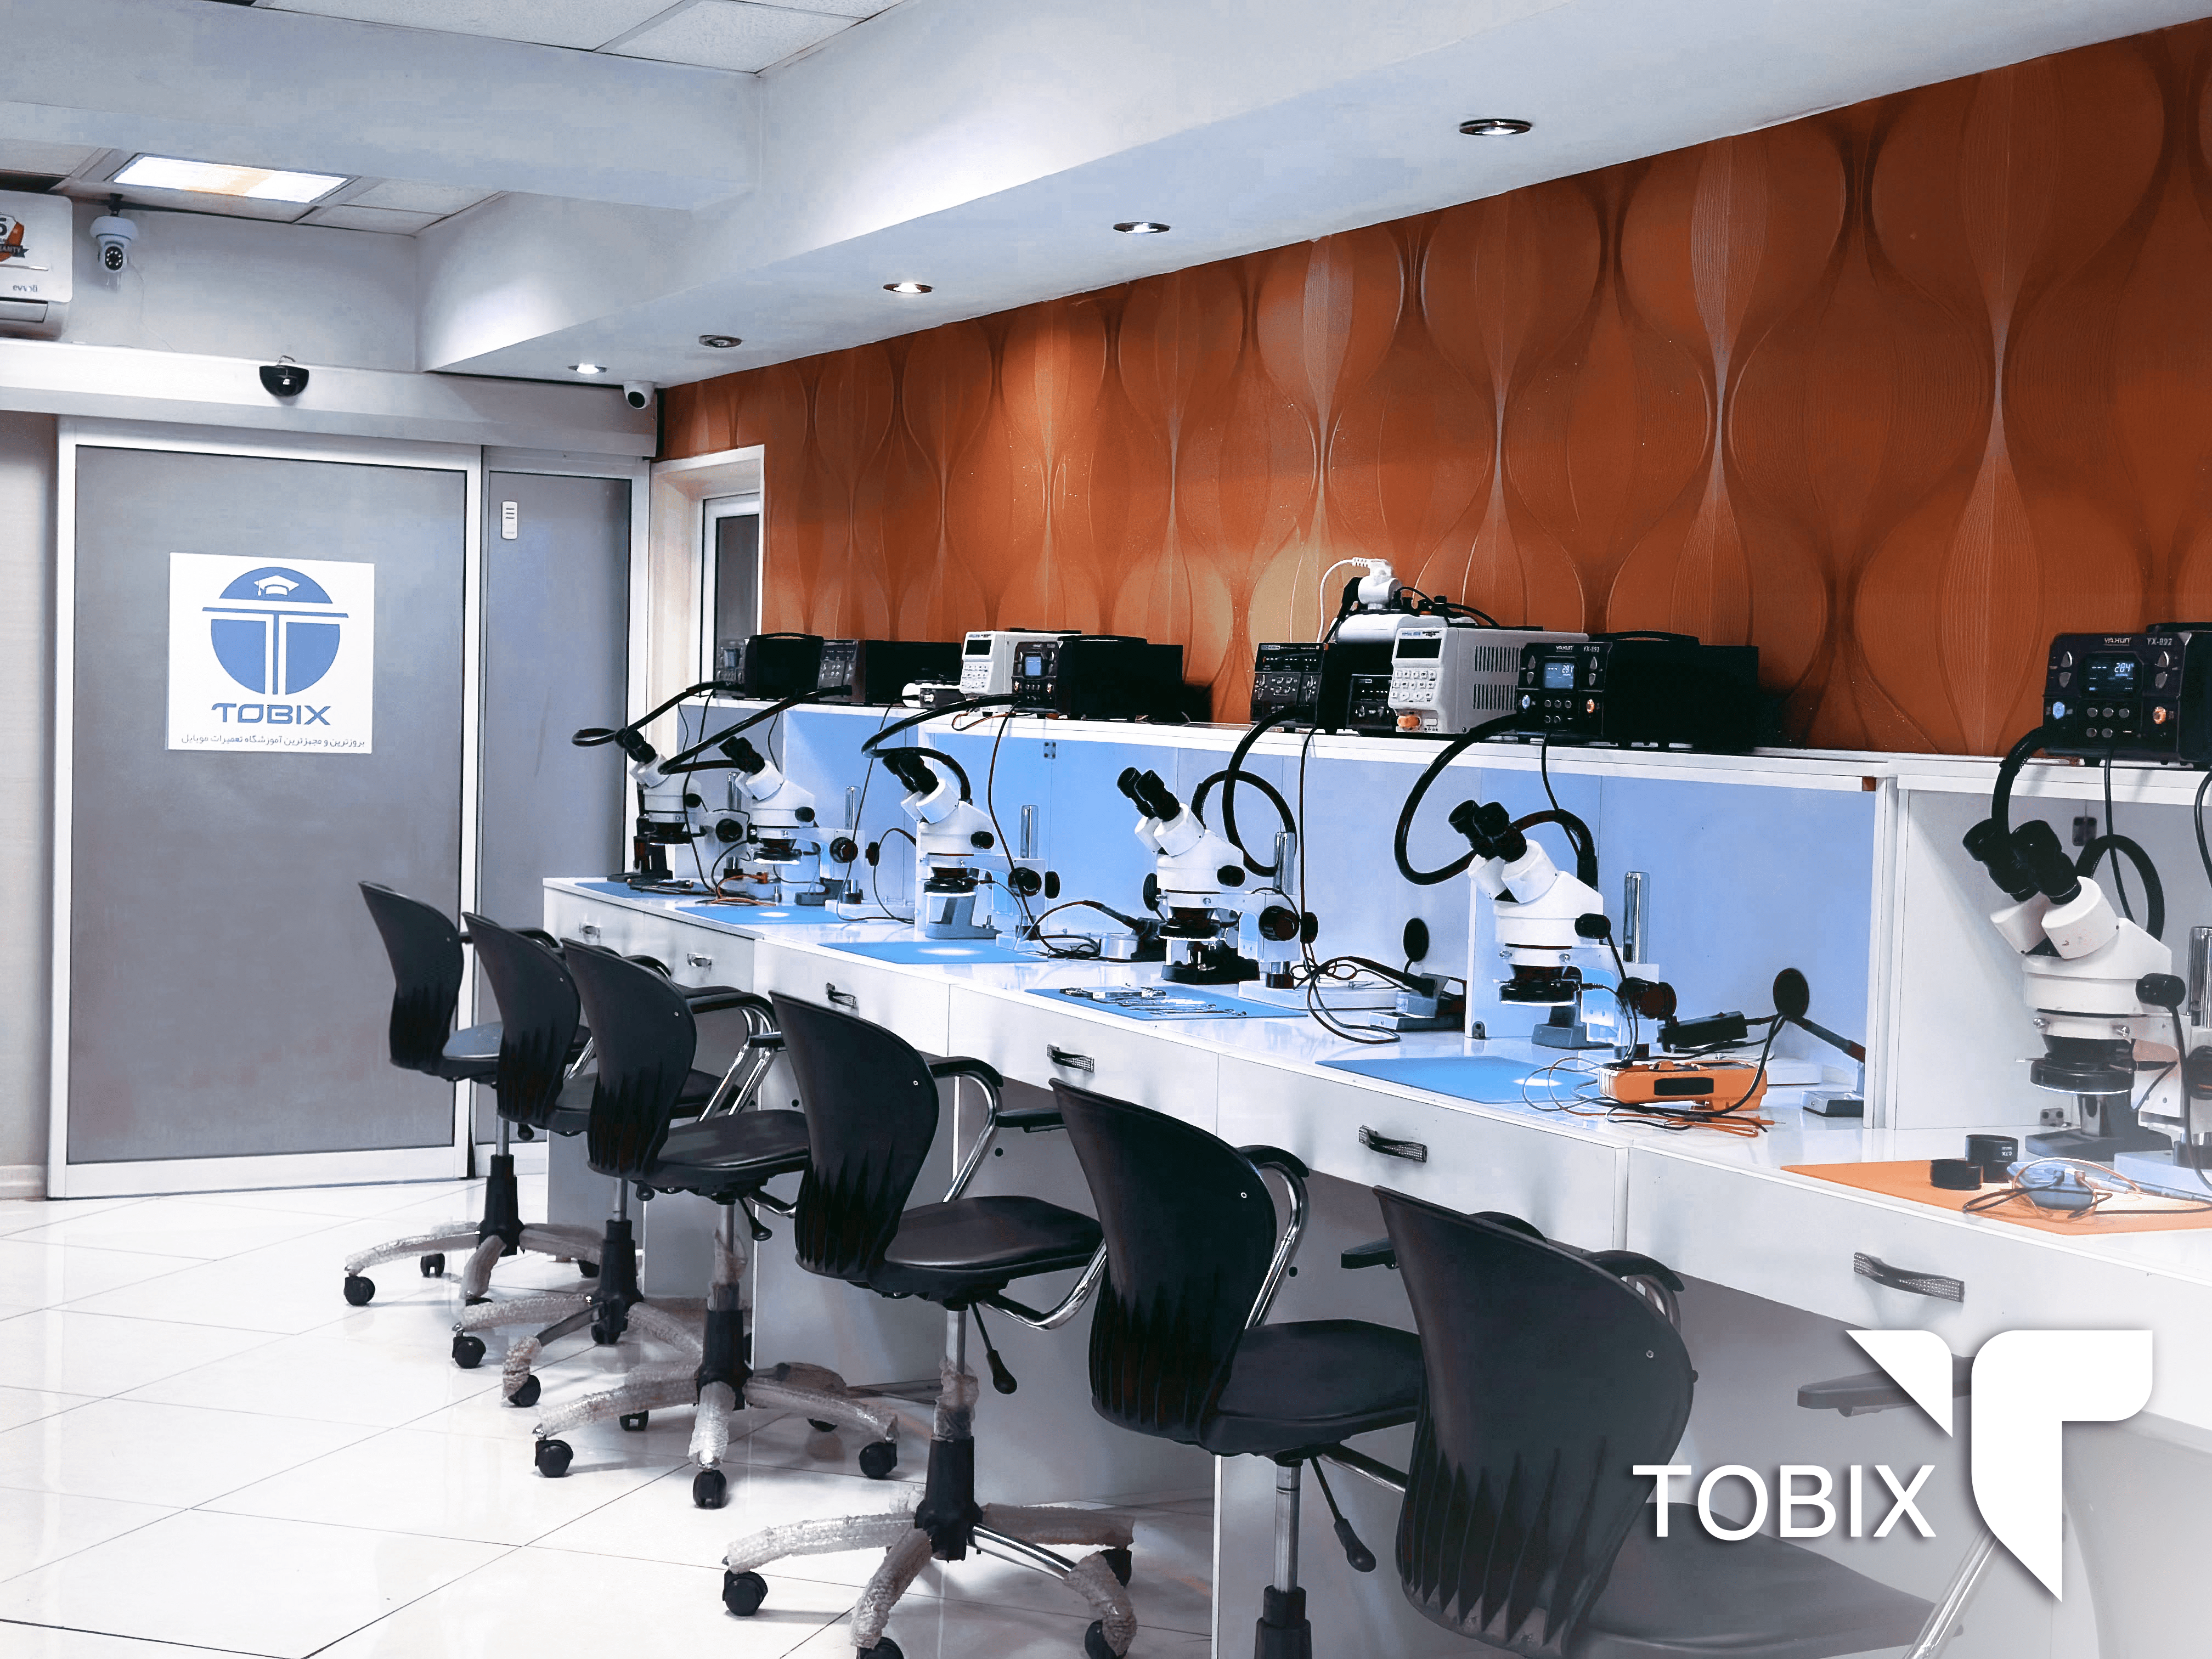 مرکز آموزش تعمیرات موبایل توبیکس